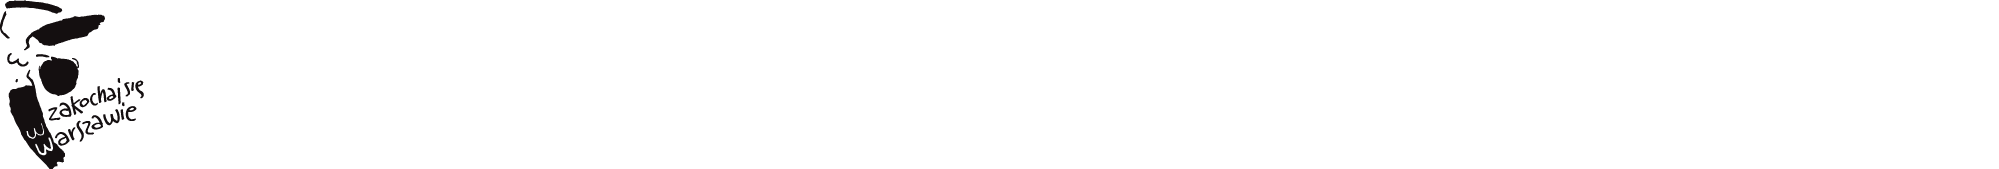 logo-strips-04